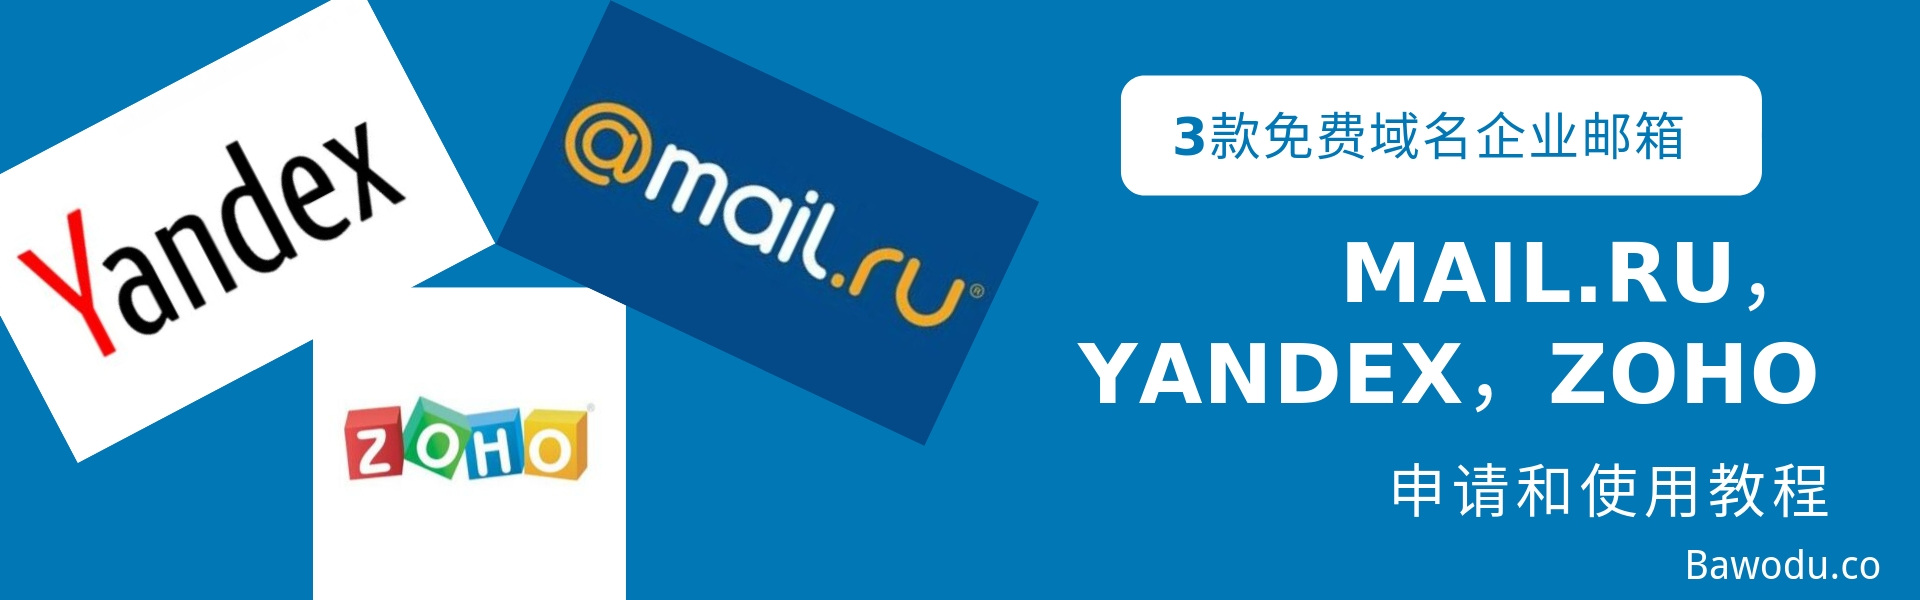 3款免费企业域名邮箱Mail.ru，Yandex，Zoho申请和使用教程